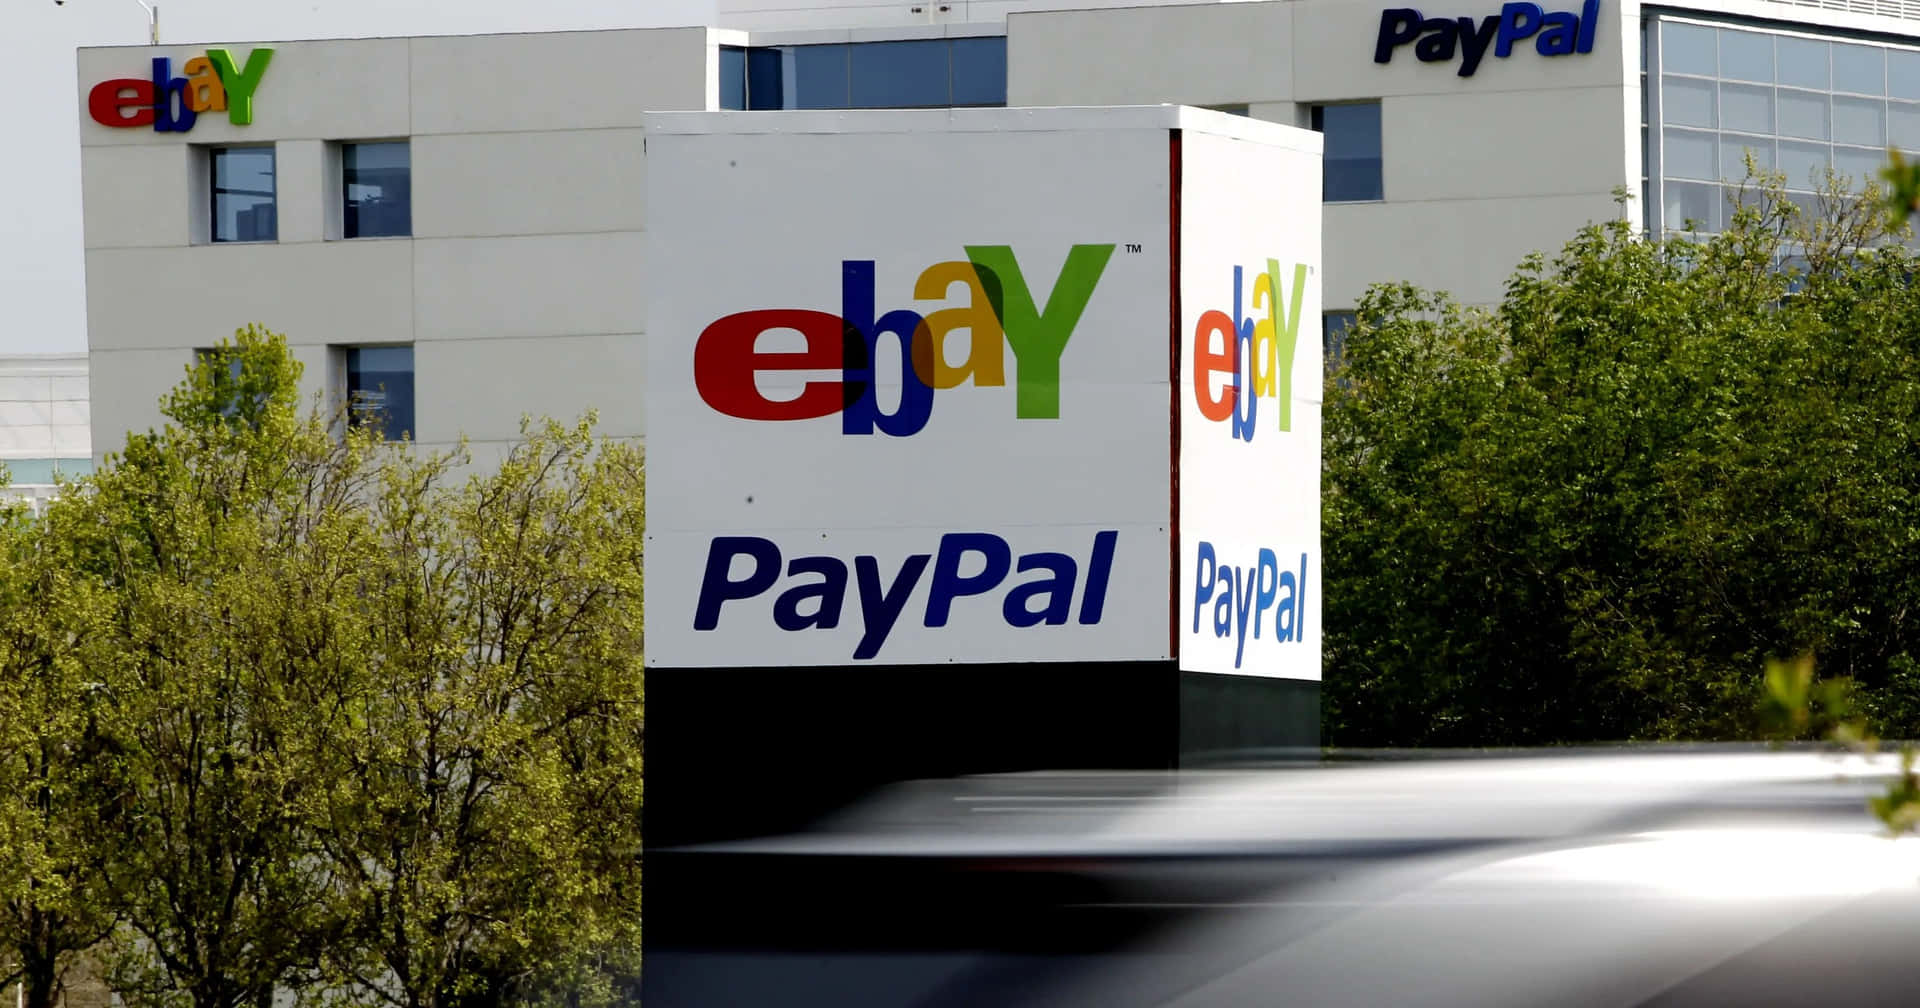 Einauto Fährt An Einem Ebay Paypal Schild Vorbei.